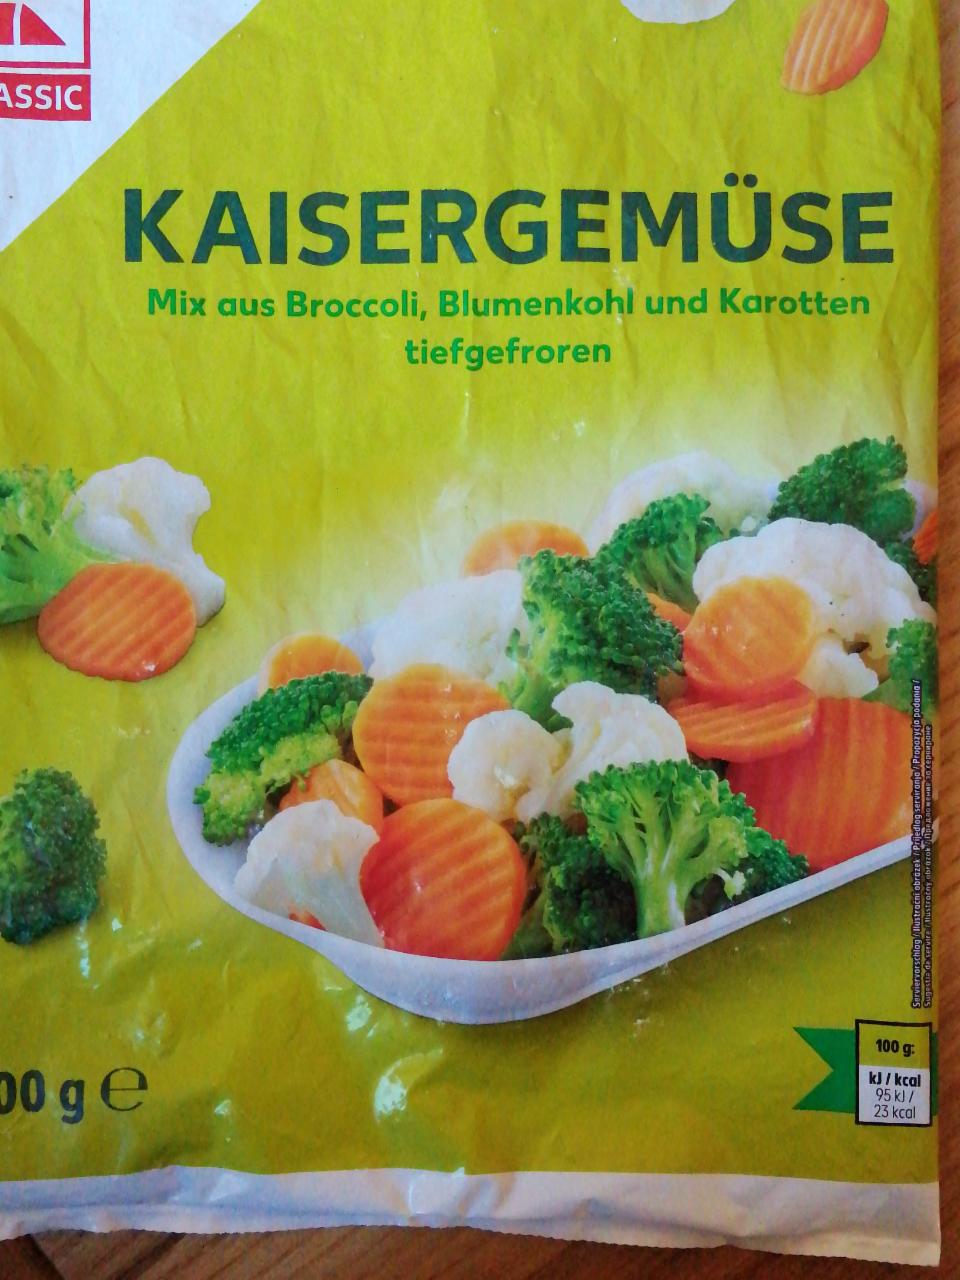 Fotografie - Kaisergemuse Mix aus Broccoli, Blumenkohl und Karotten tiefgefroren